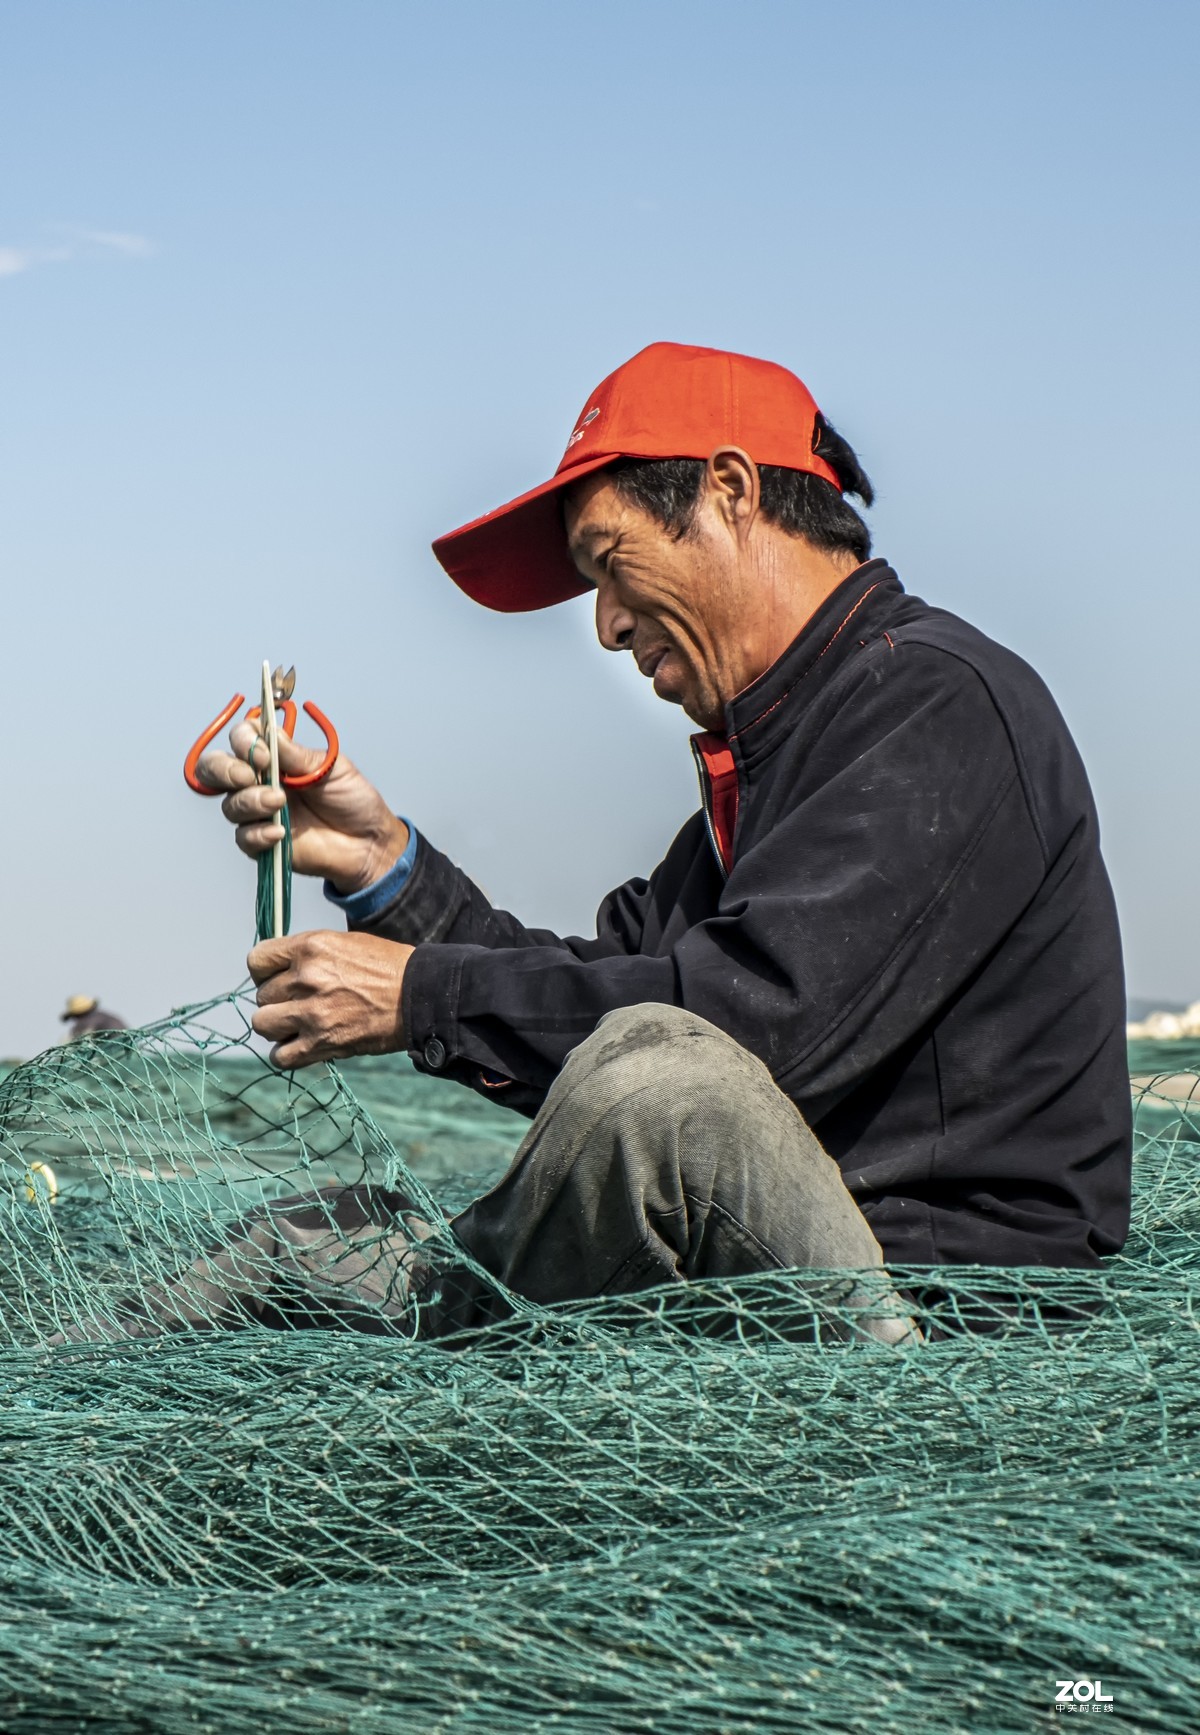 【高清图】渔村渔民鱼休忙-中关村在线摄影论坛